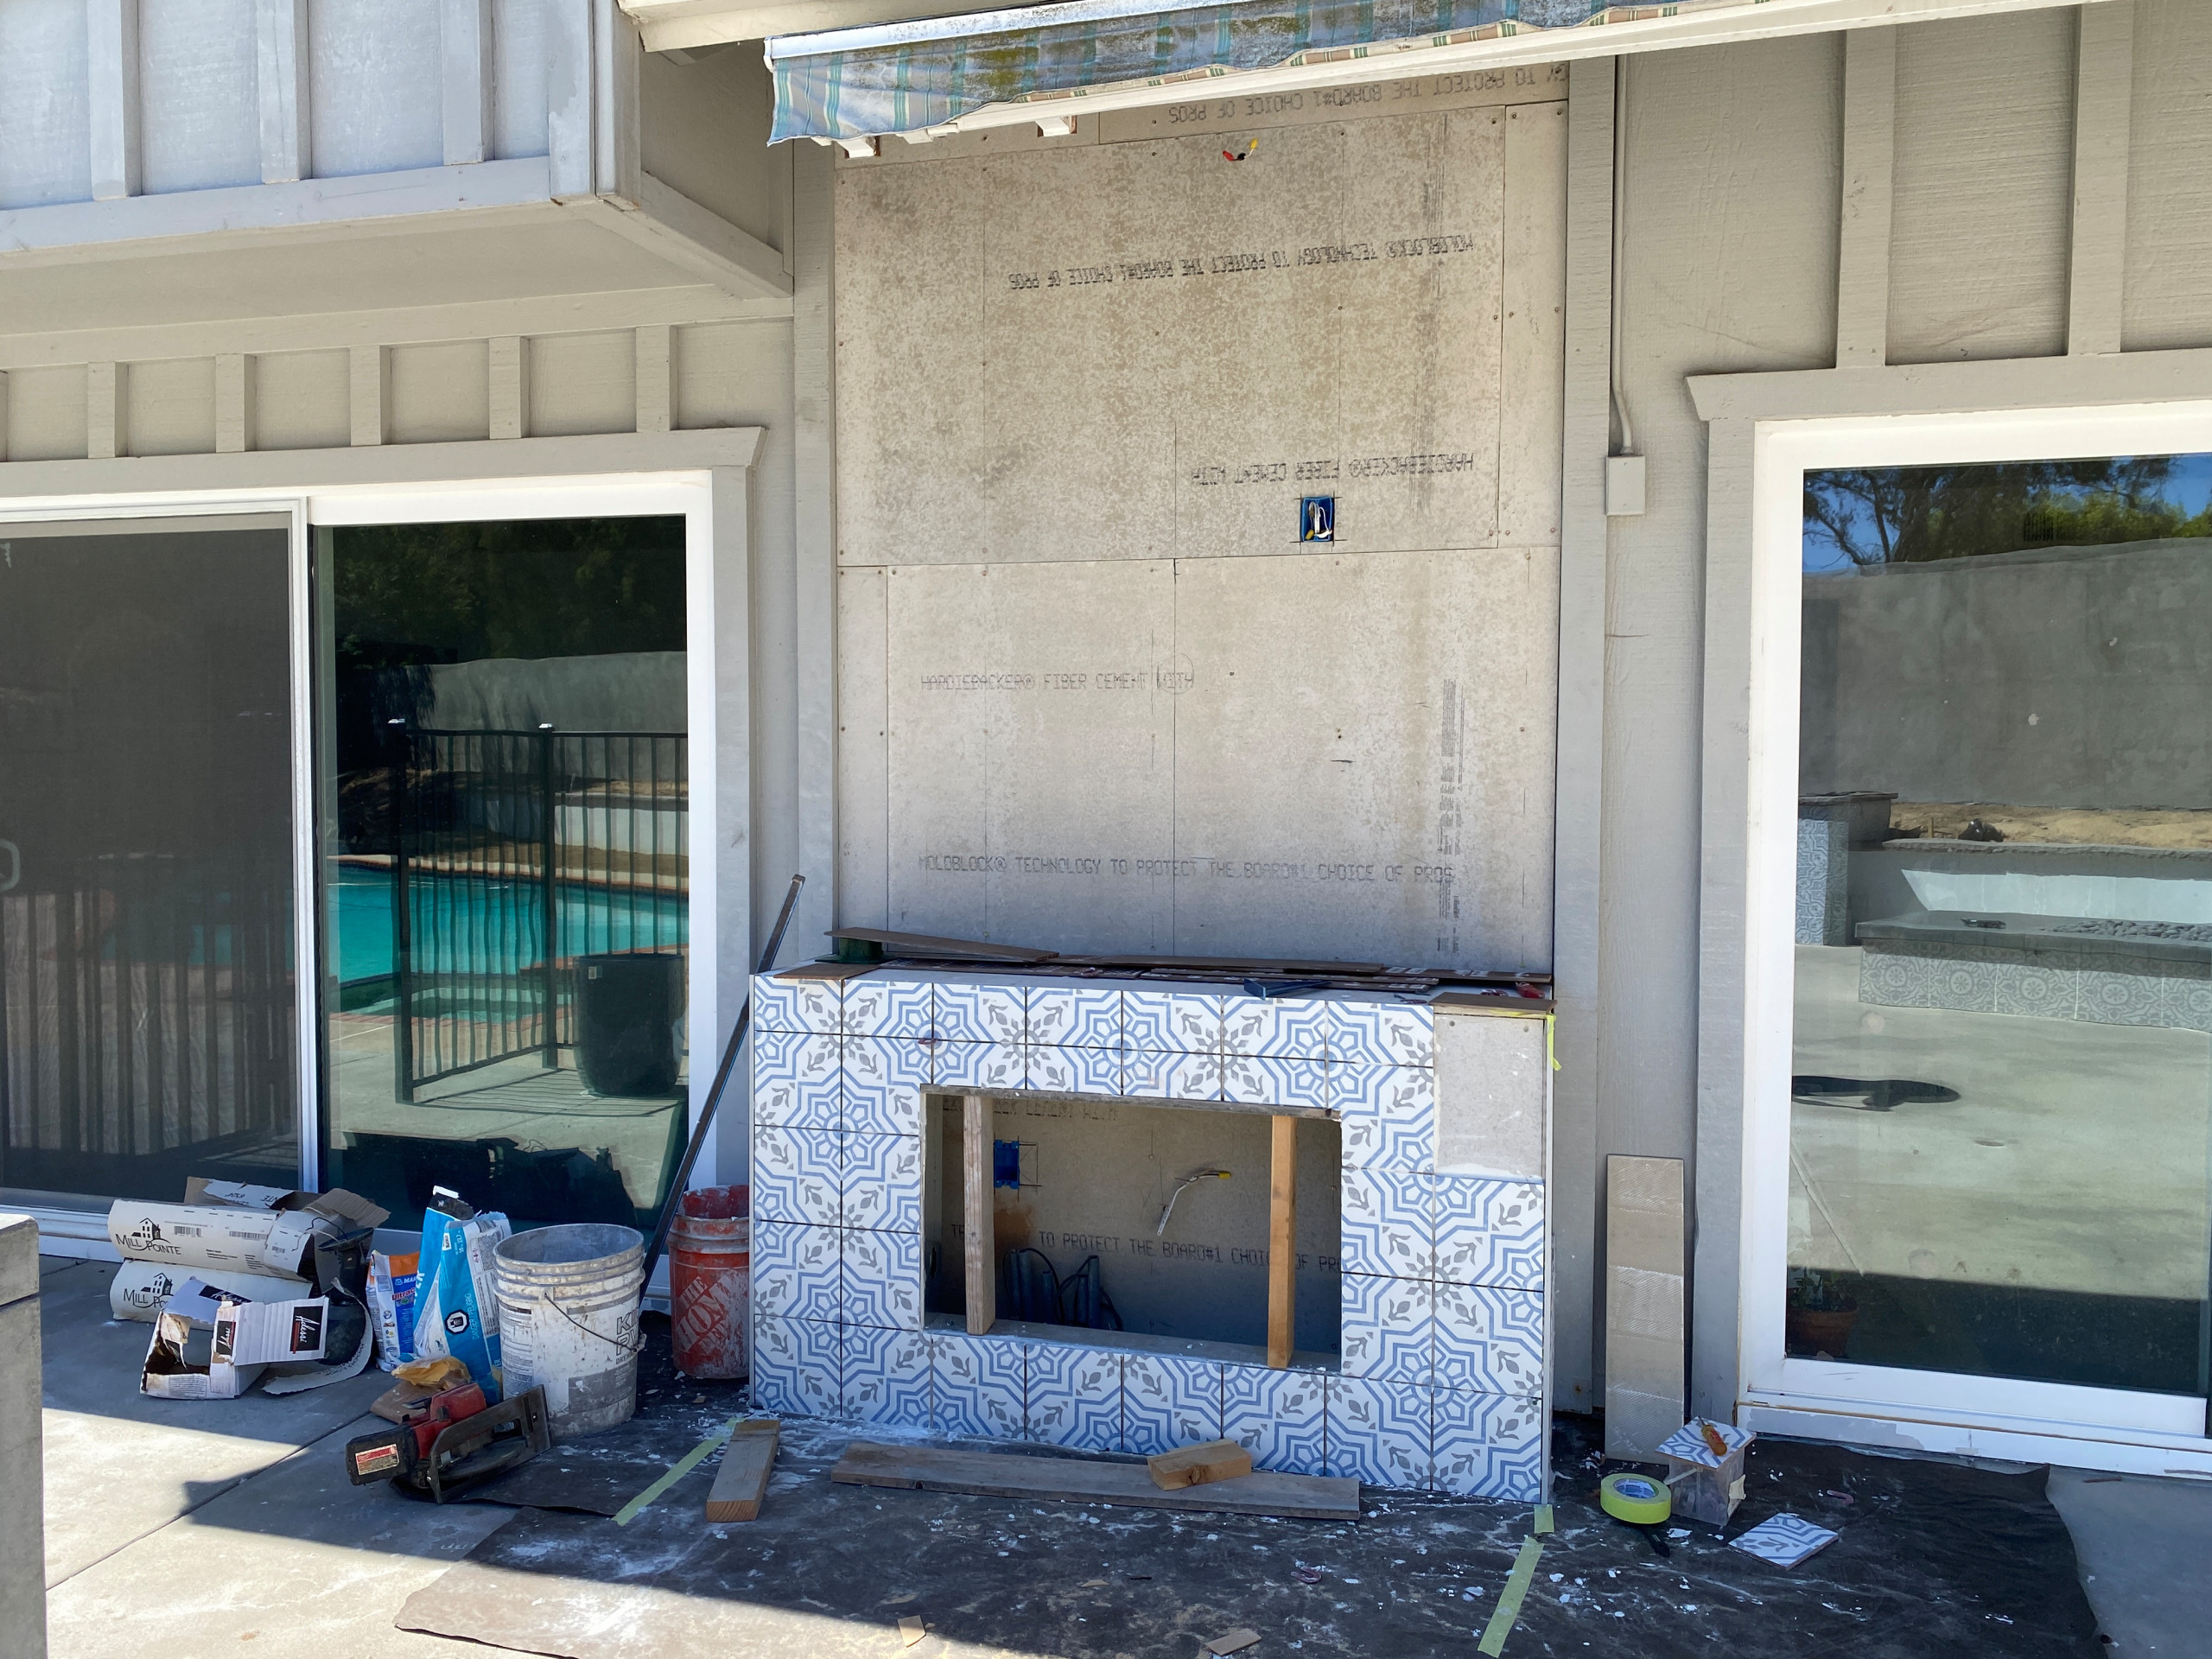 Installing Deco Pattern Tile on a TV Wall in La Jolla